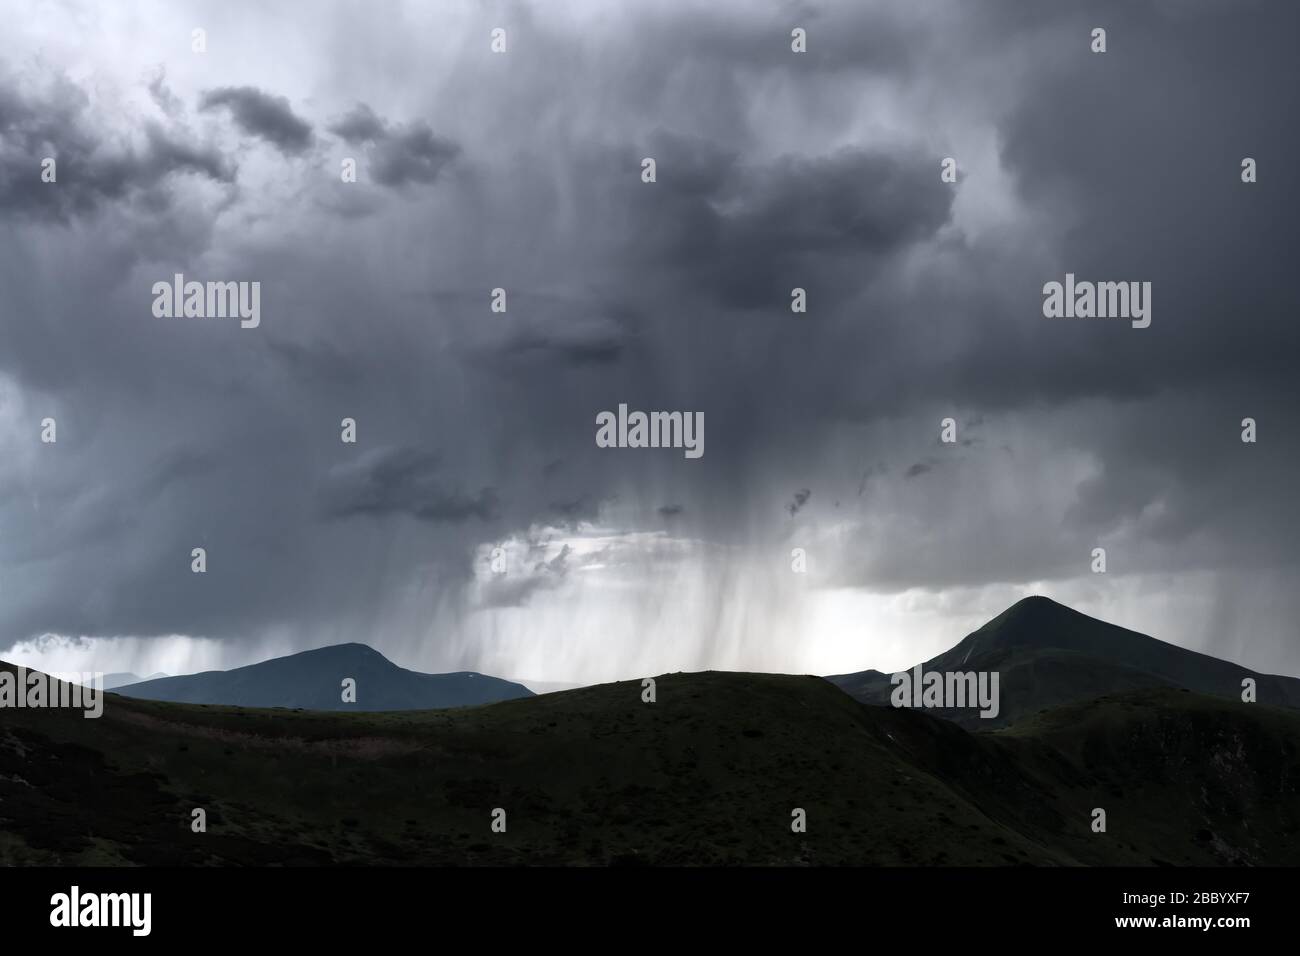 Incredibili nuvole piovose fluenti in montagna serale. Bella natura dei Carpazi. Fotografia di paesaggio Foto Stock